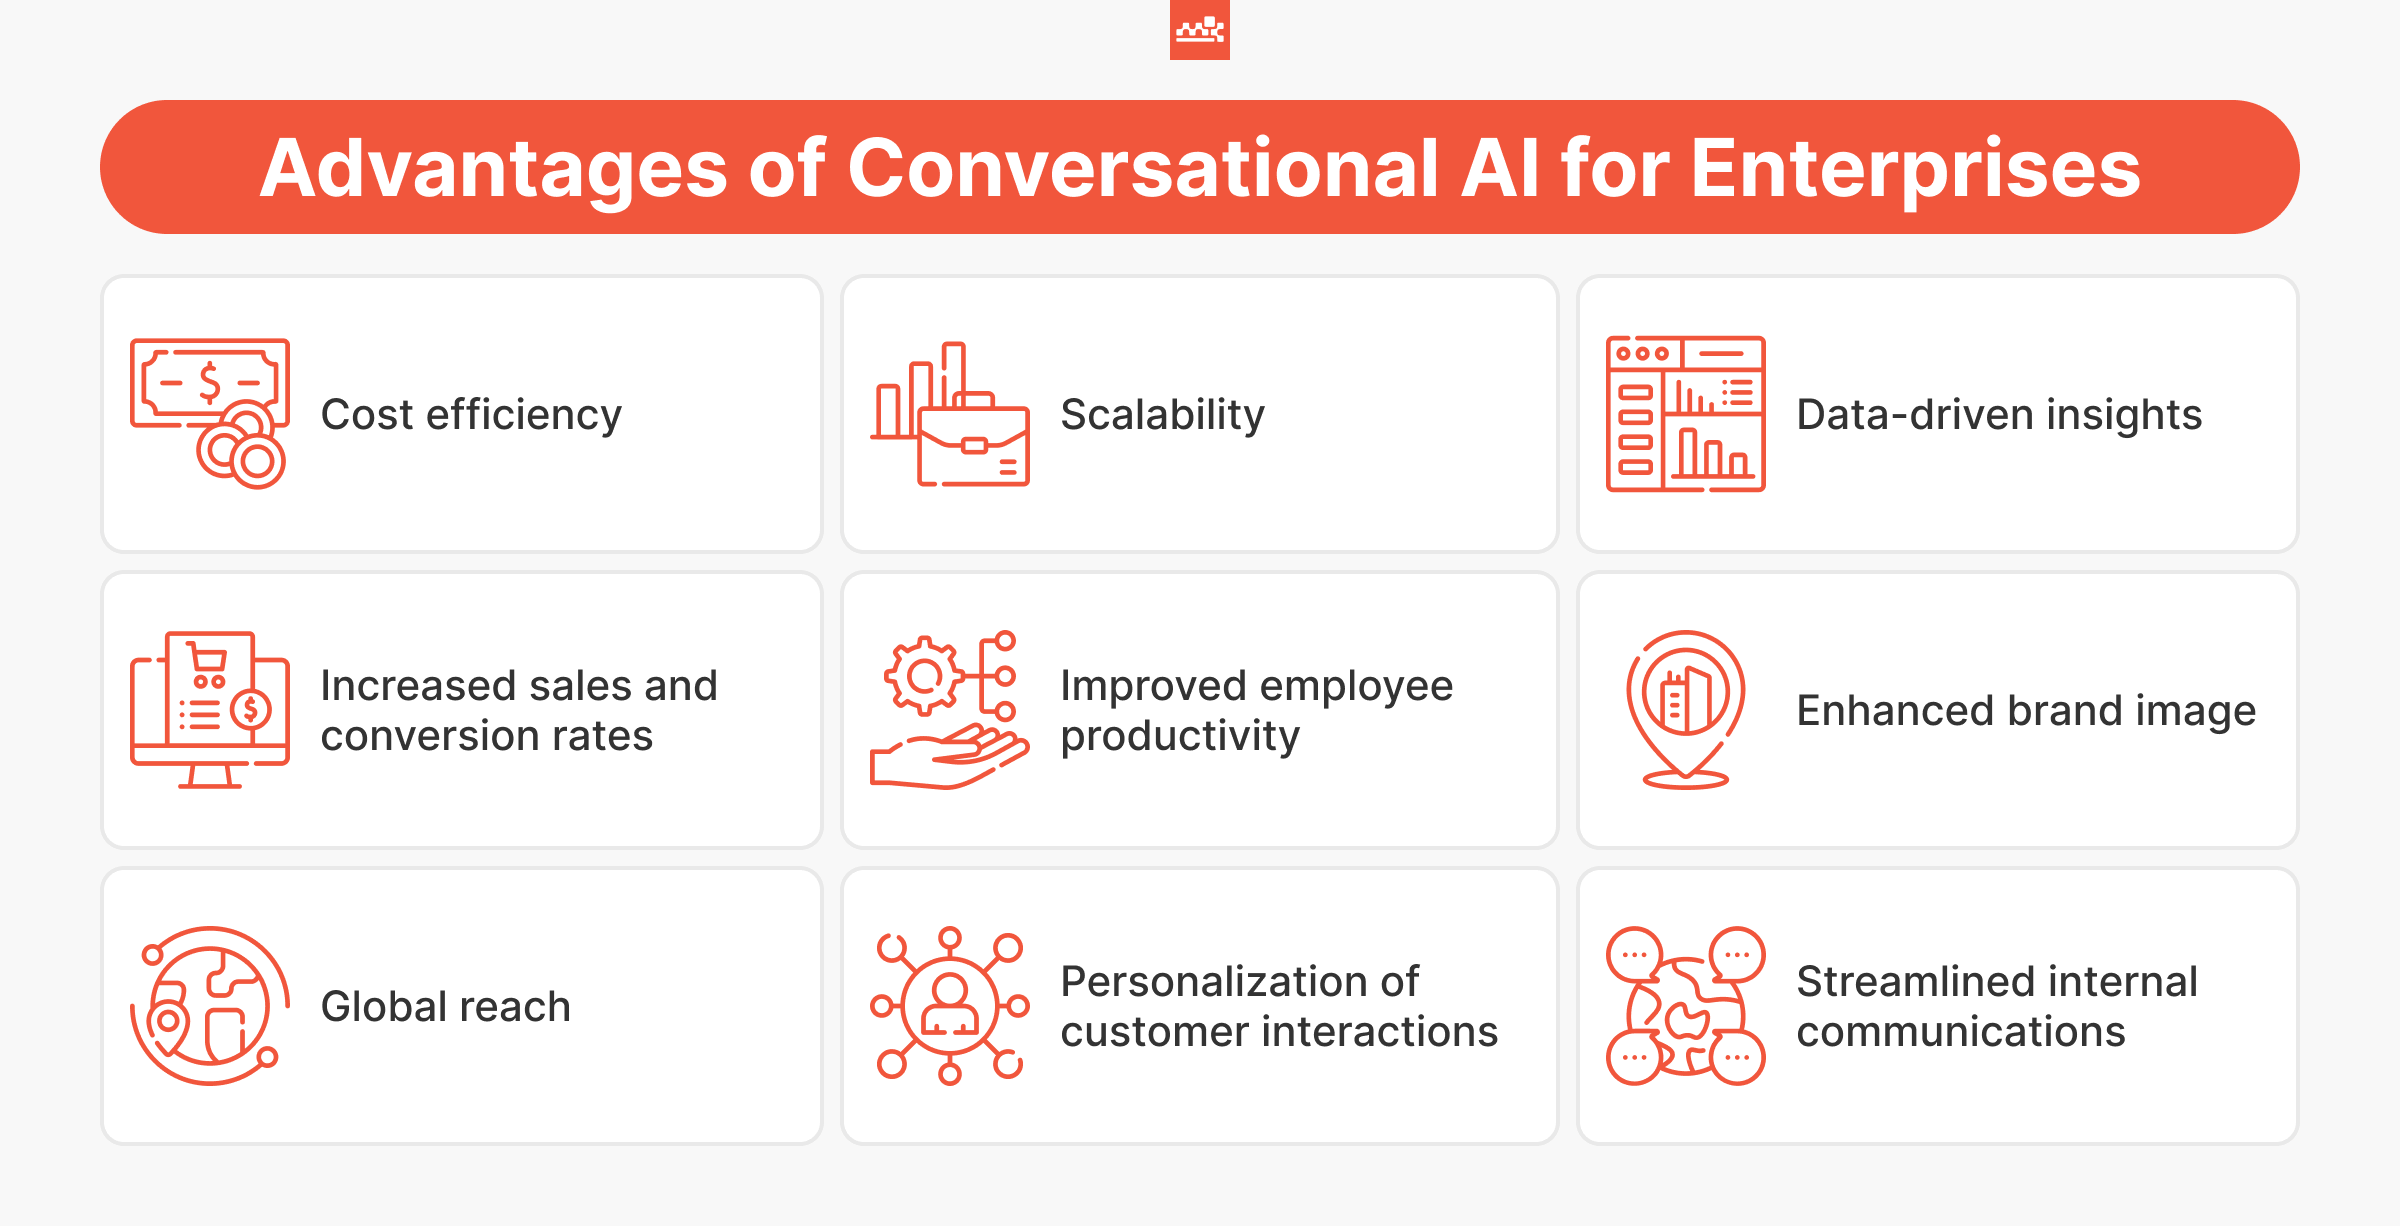 Benefits of Conversational AI for Enterprises